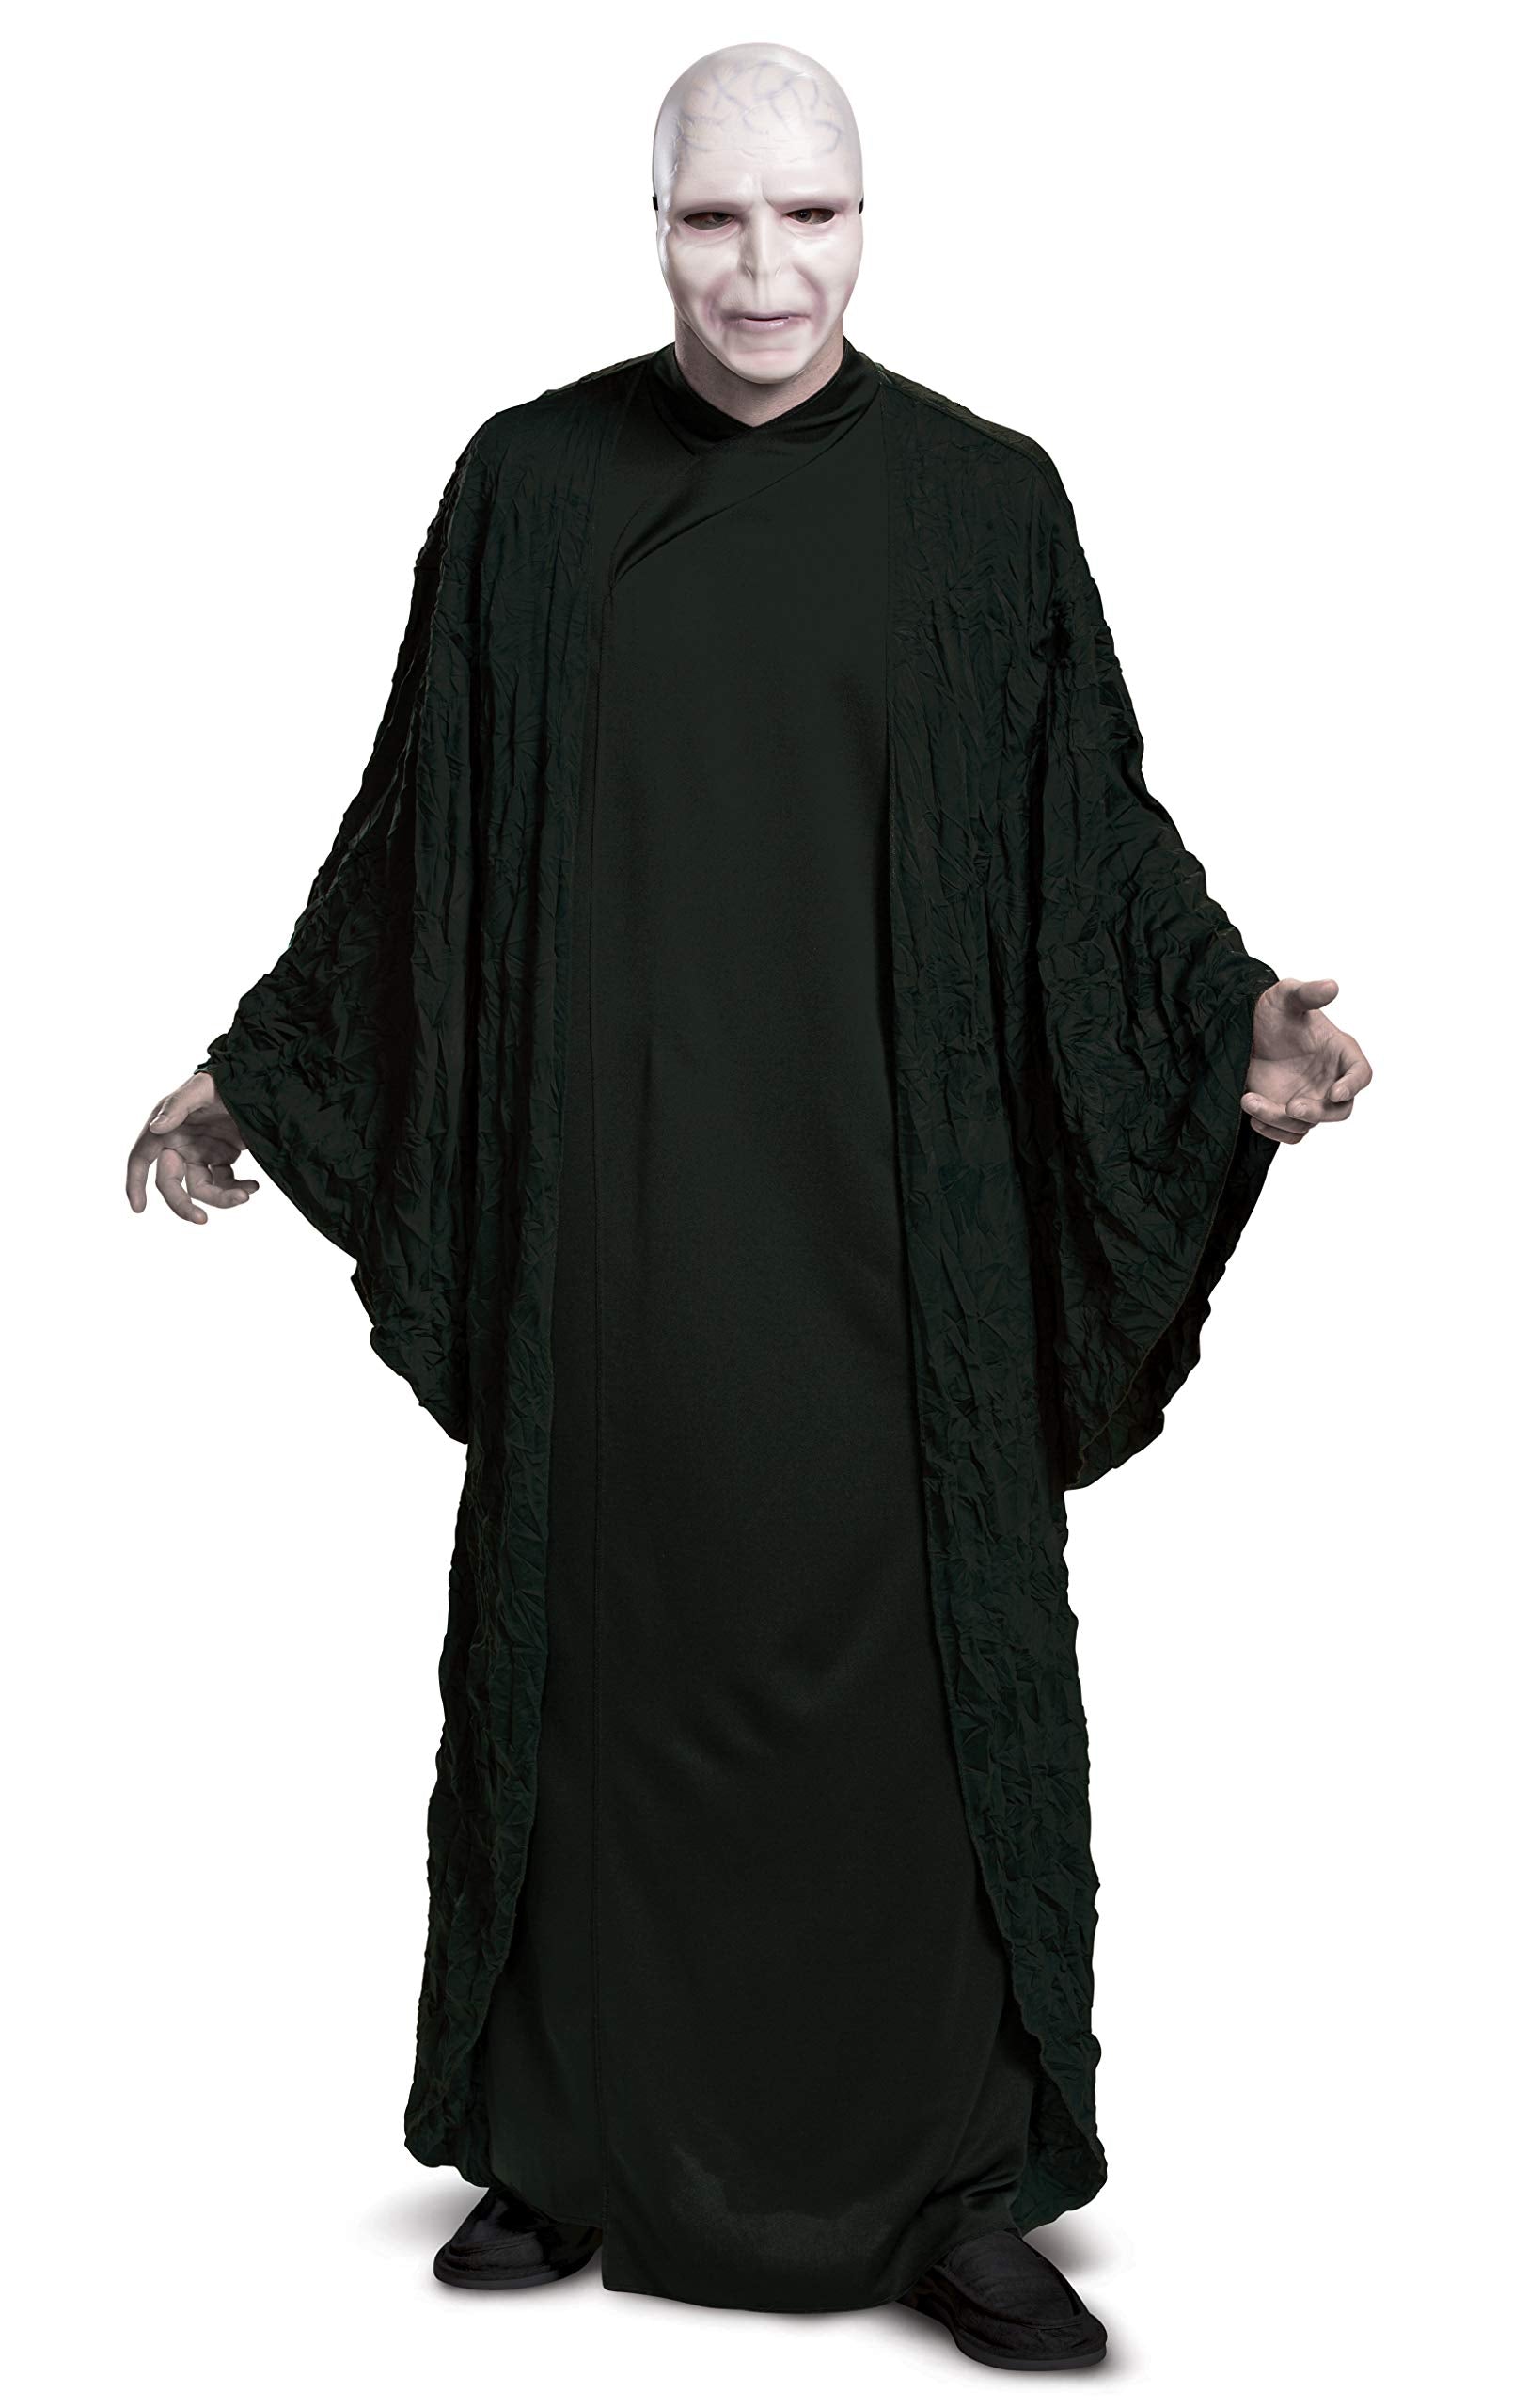 Disguise Men's Harry Potter Voldemort Deluxe Adult Costume, Black